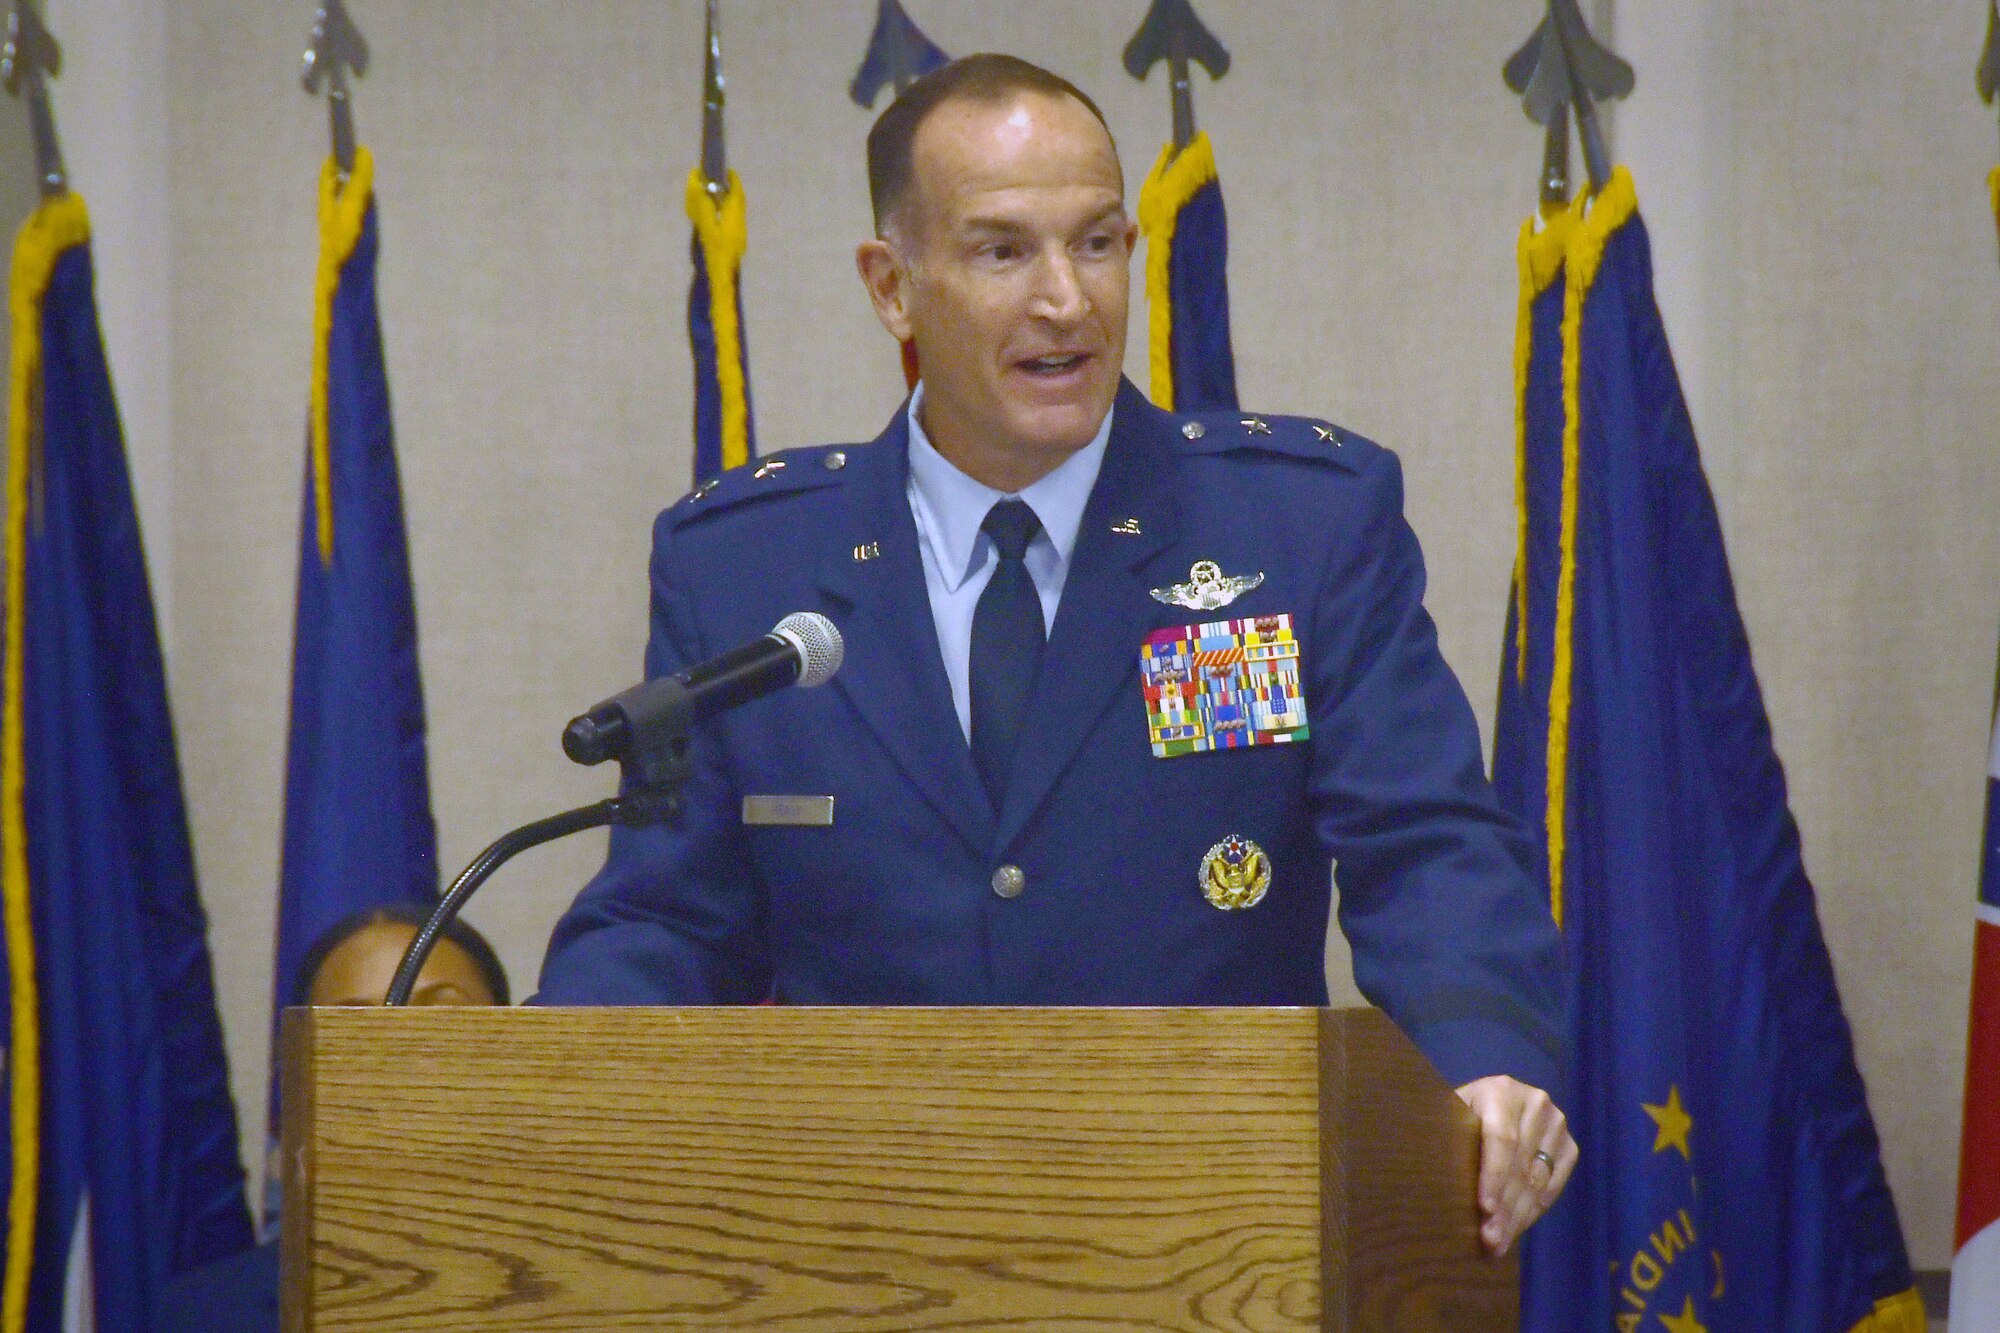 Maj. Gen. John P. Healy, commander of the 22nd Air Force, gives remarks, July 26, 2019, at Dobbins Air Reserve Base, Ga.